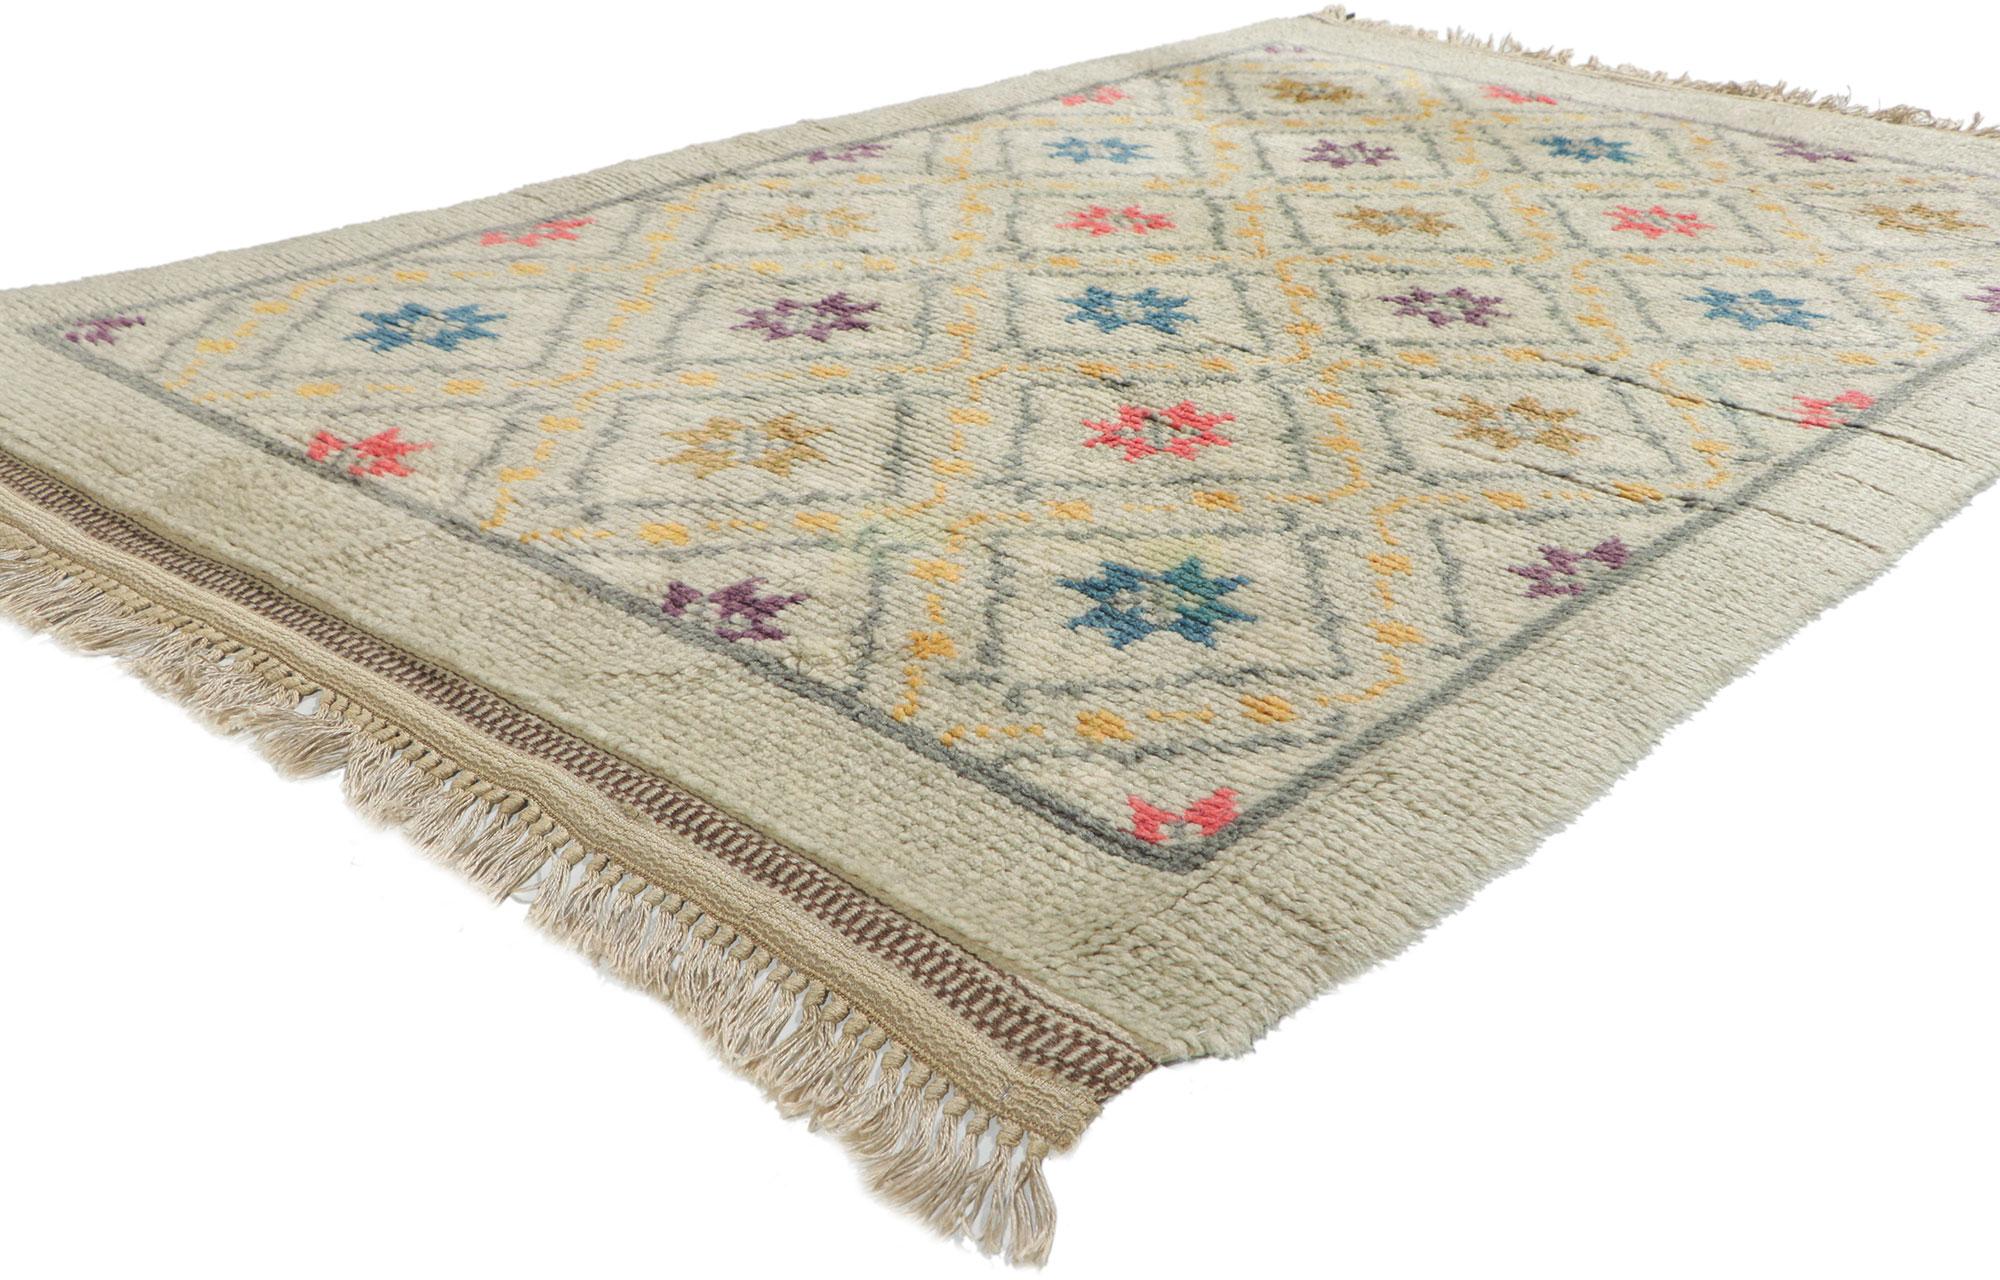 78509 Schwedischer Vintage Rya-Teppich, 04'04 x 06'06
Dieser handgeknüpfte schwedische Rya-Teppich im skandinavisch-modernen Stil besticht durch seine unglaubliche Detailtreue und Textur und ist eine faszinierende Vision gewebter Schönheit. Das